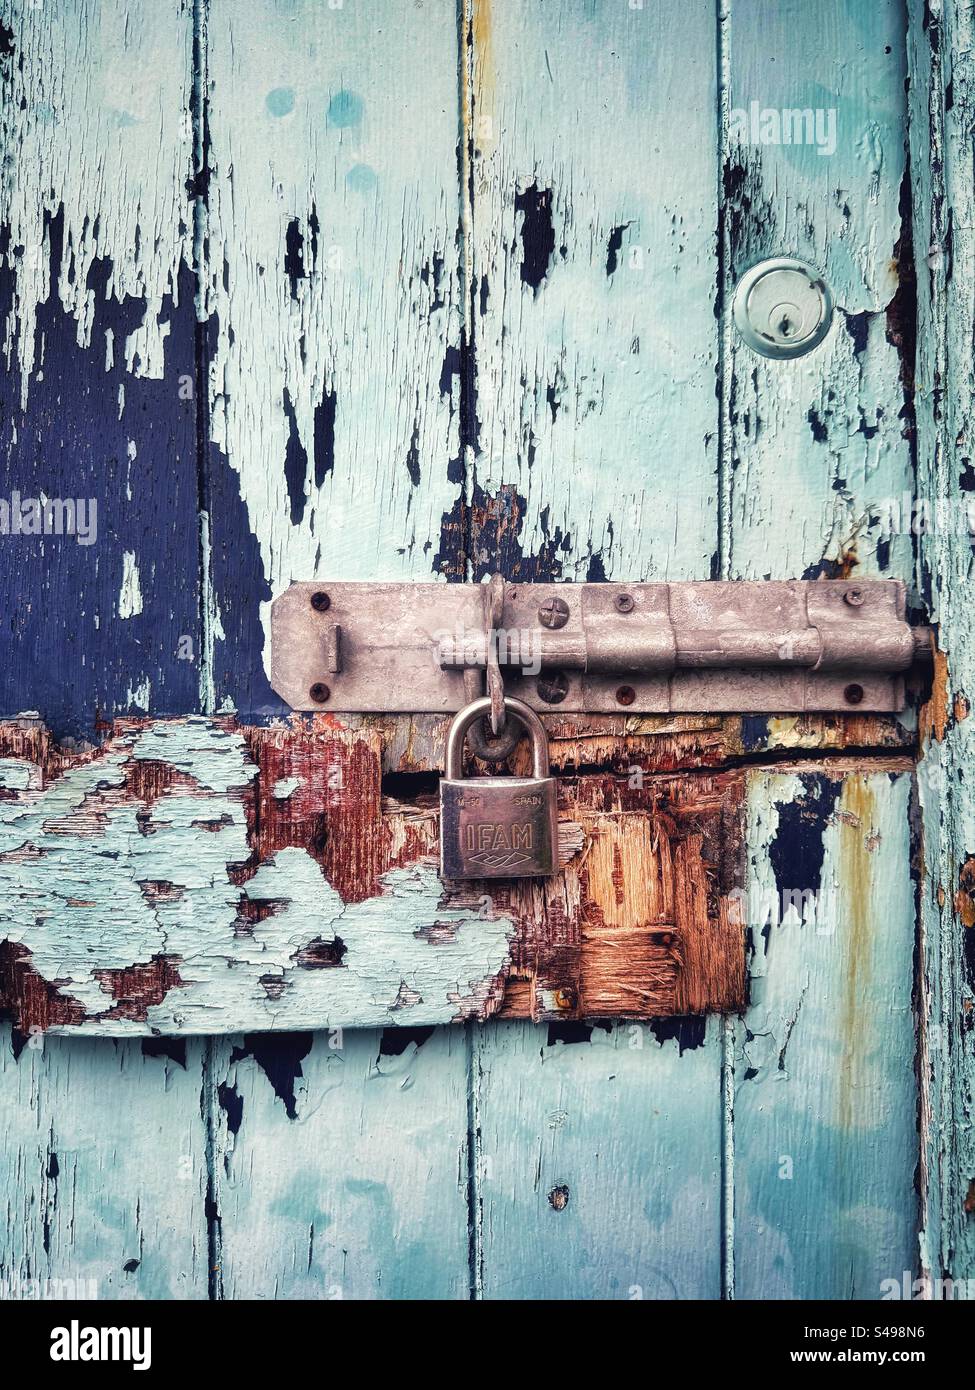 Vieille serrure sur une porte en bois battue et patinée avec écaillage et peinture délavée. Banque D'Images